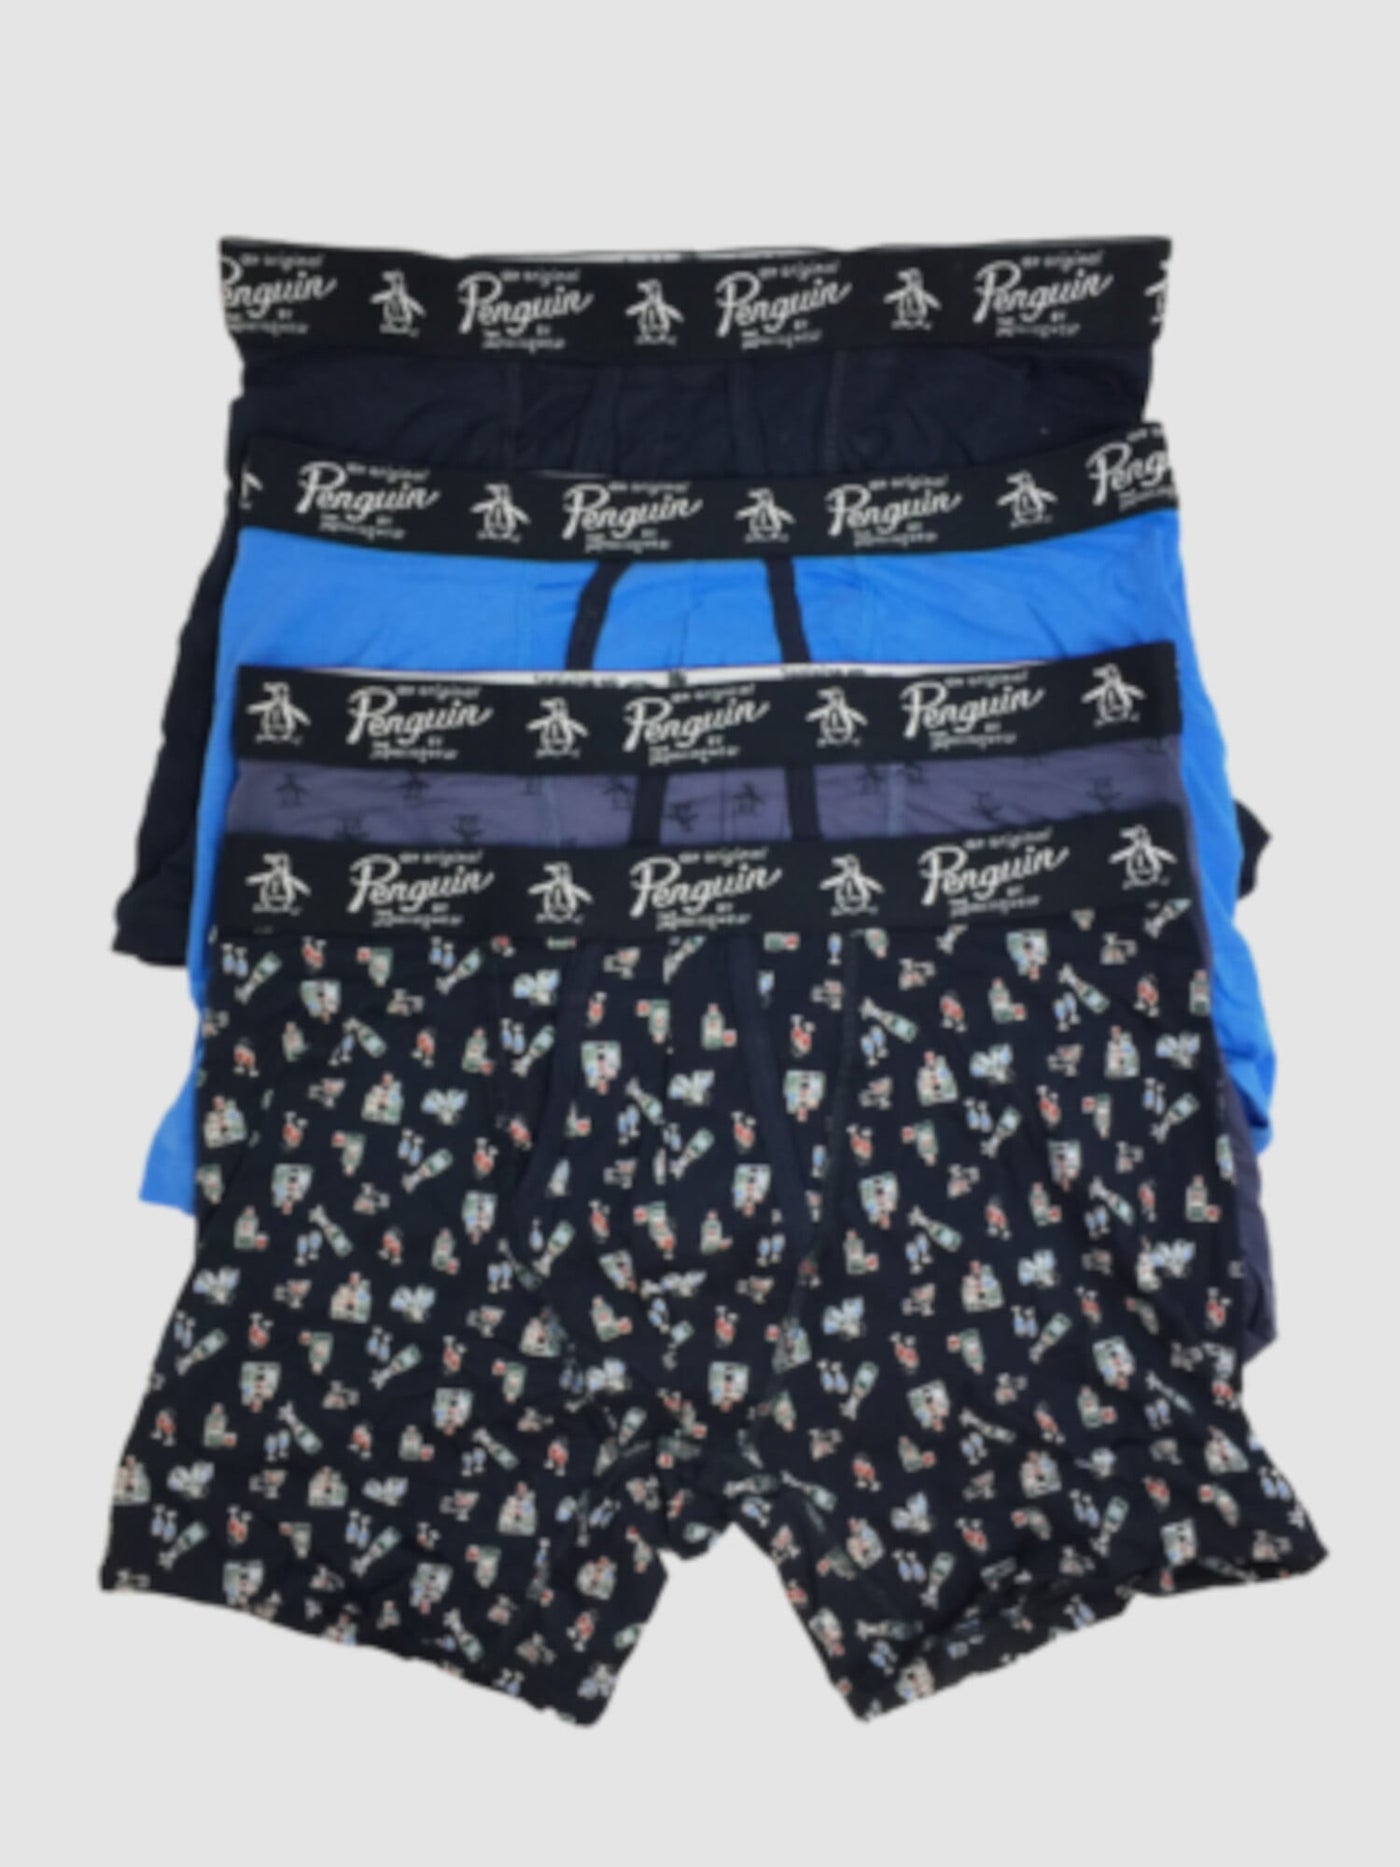 ORIGINAL PENGUIN Intimates 4 Pack Blue Cotton Blend Stretch Boxer Brief Underwear XL